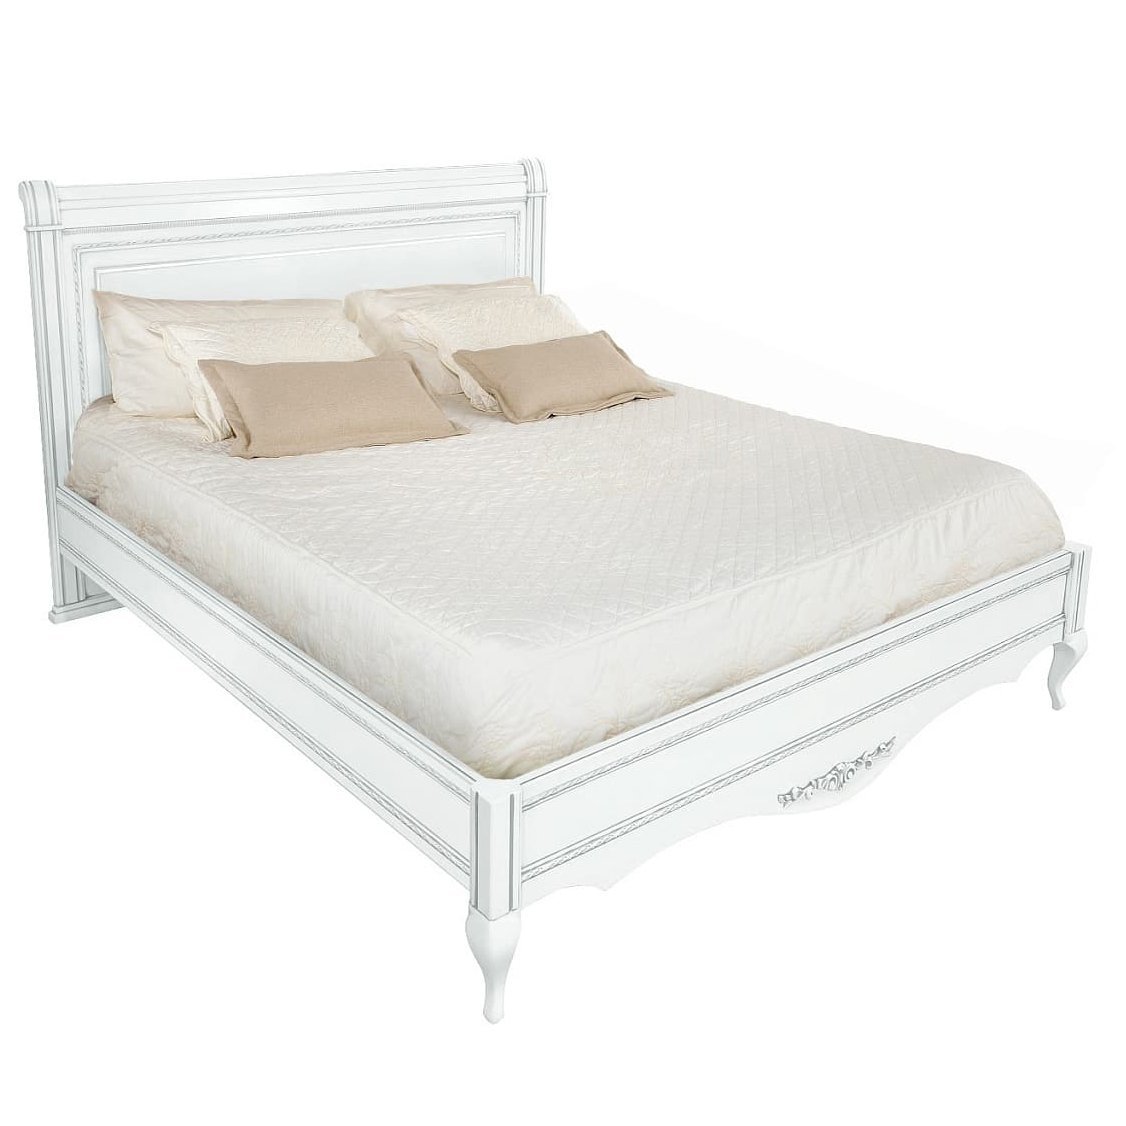 Кровать Timber Неаполь, двуспальная с мягким изголовьем 180x200 см цвет: белый с серебром (T-528)T-528